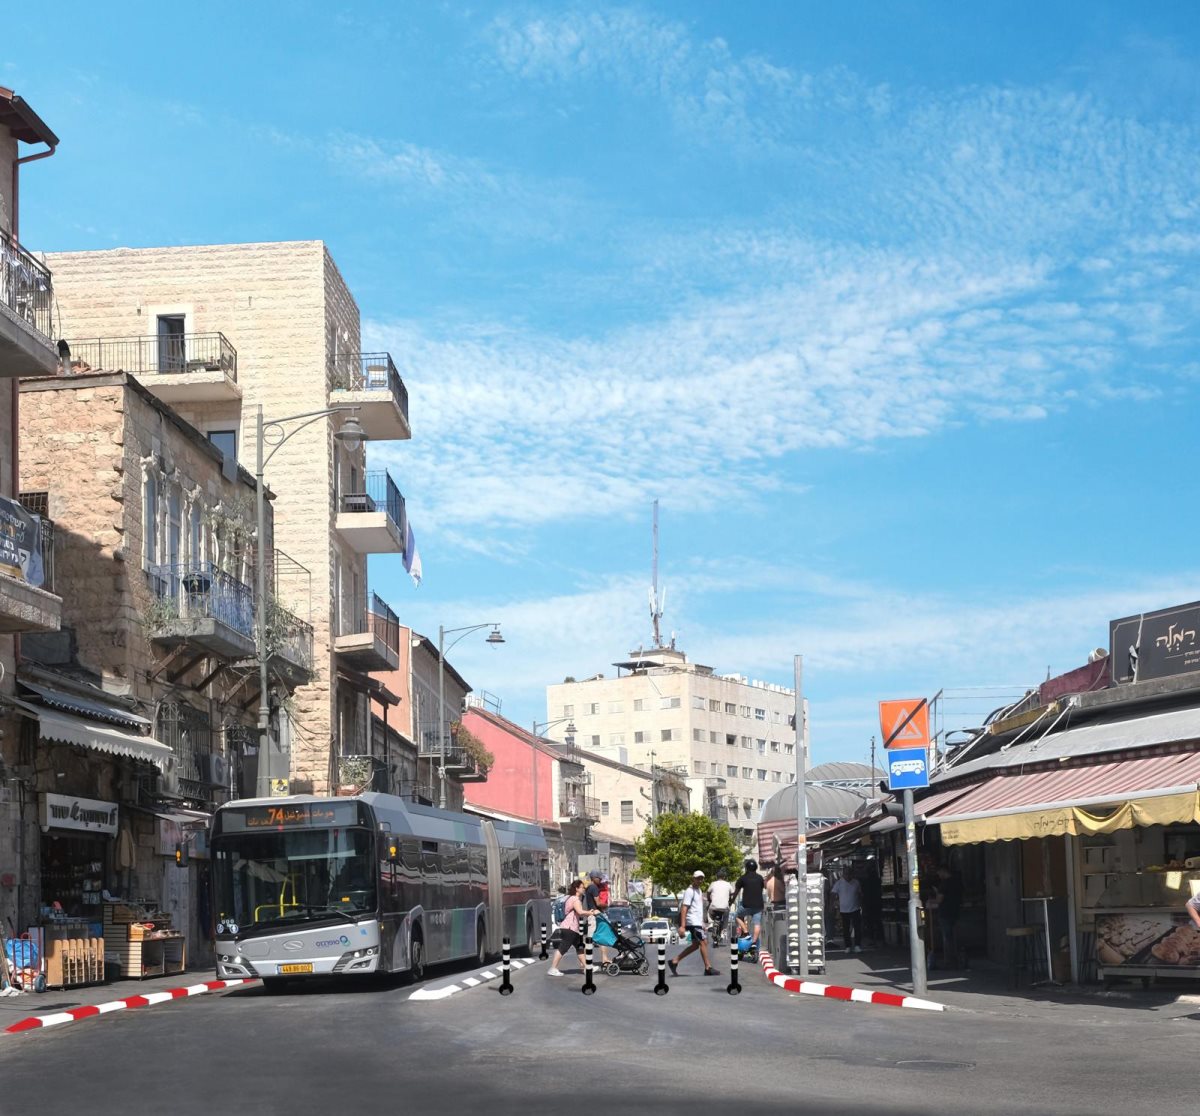 שוק מחנה יהודה בירושלים. צילום: באדיבות המצלם